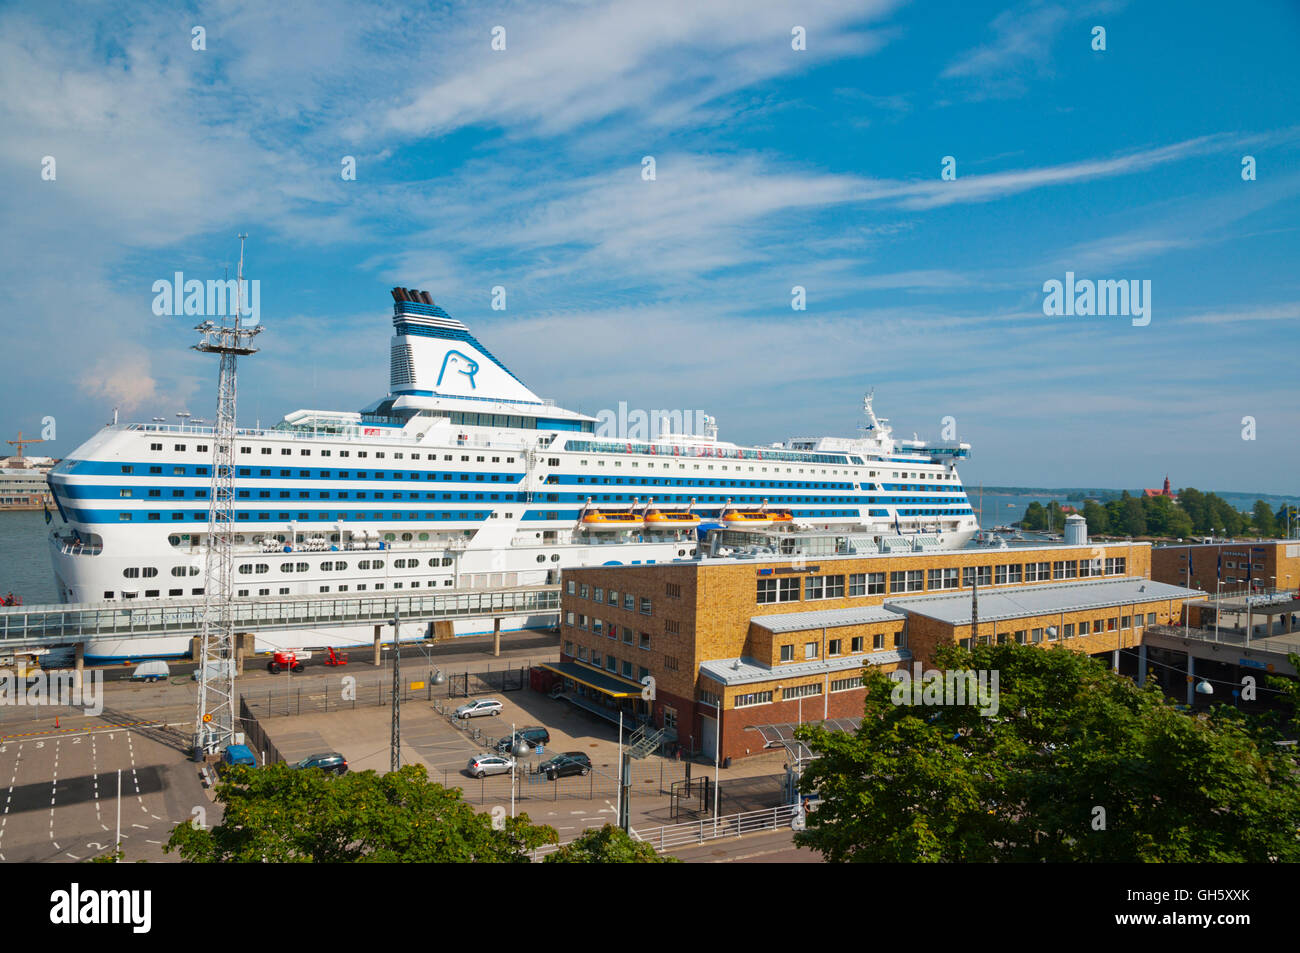 Silja Line terminal, Olympiaterminaali, Eteläranta, Helsinki, Finland Stock  Photo - Alamy